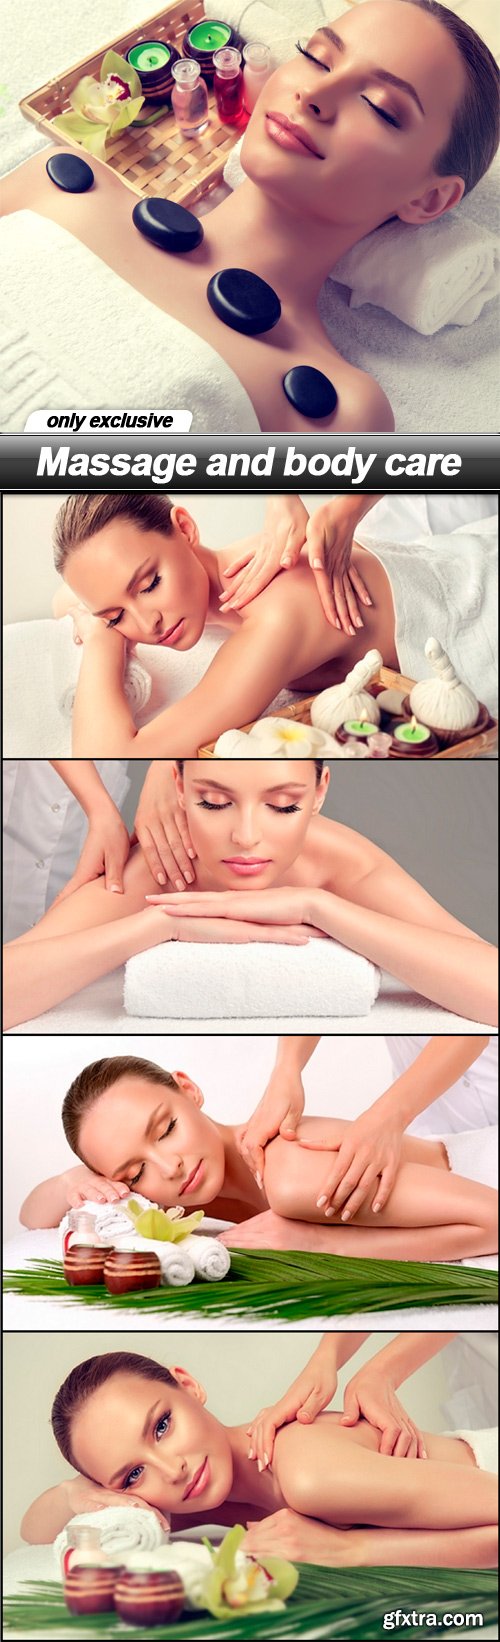 Massage and body care - 5 UHQ JPEG